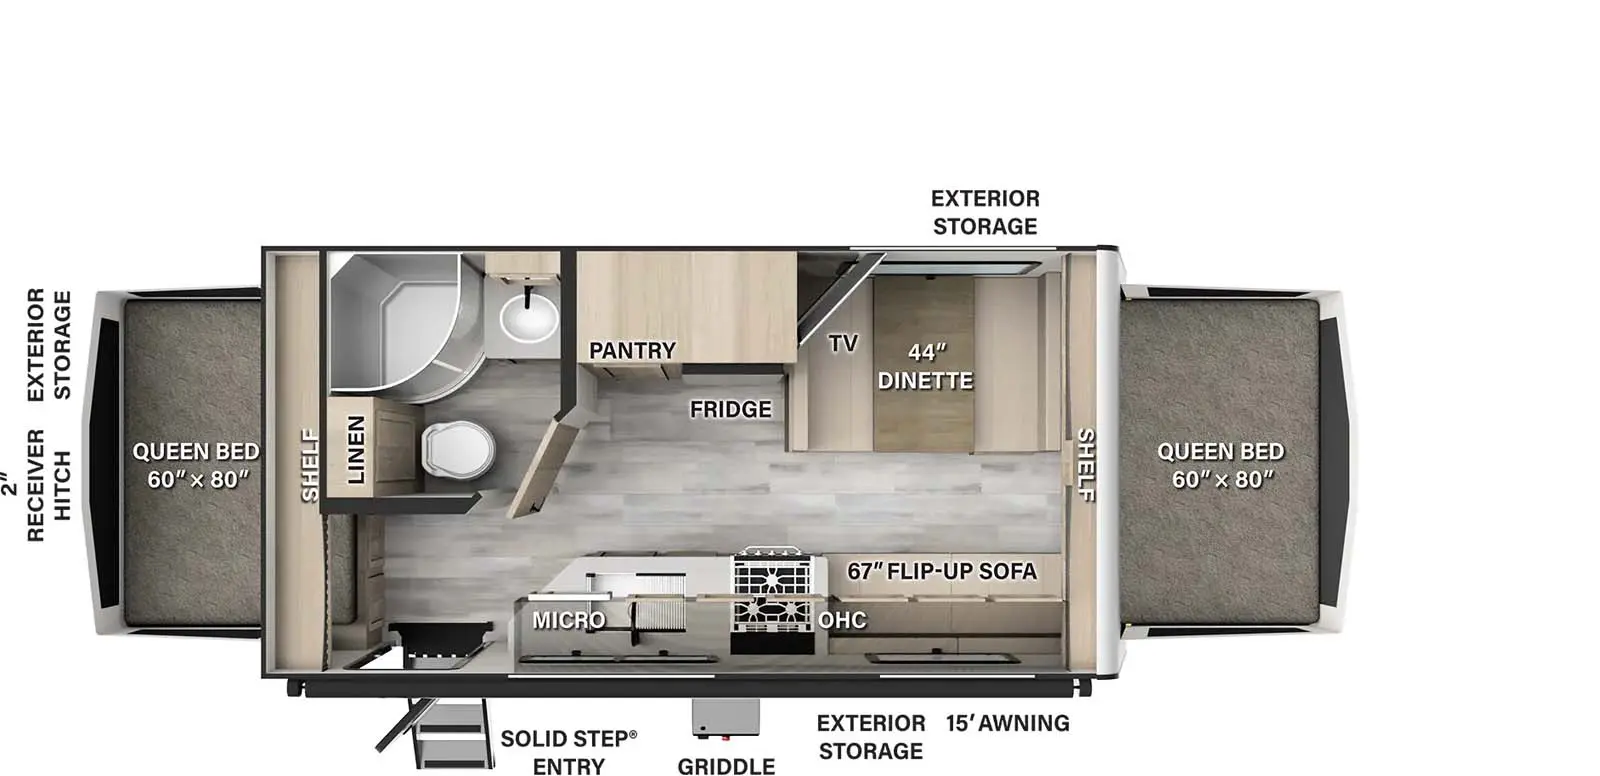 19 Floorplan Image